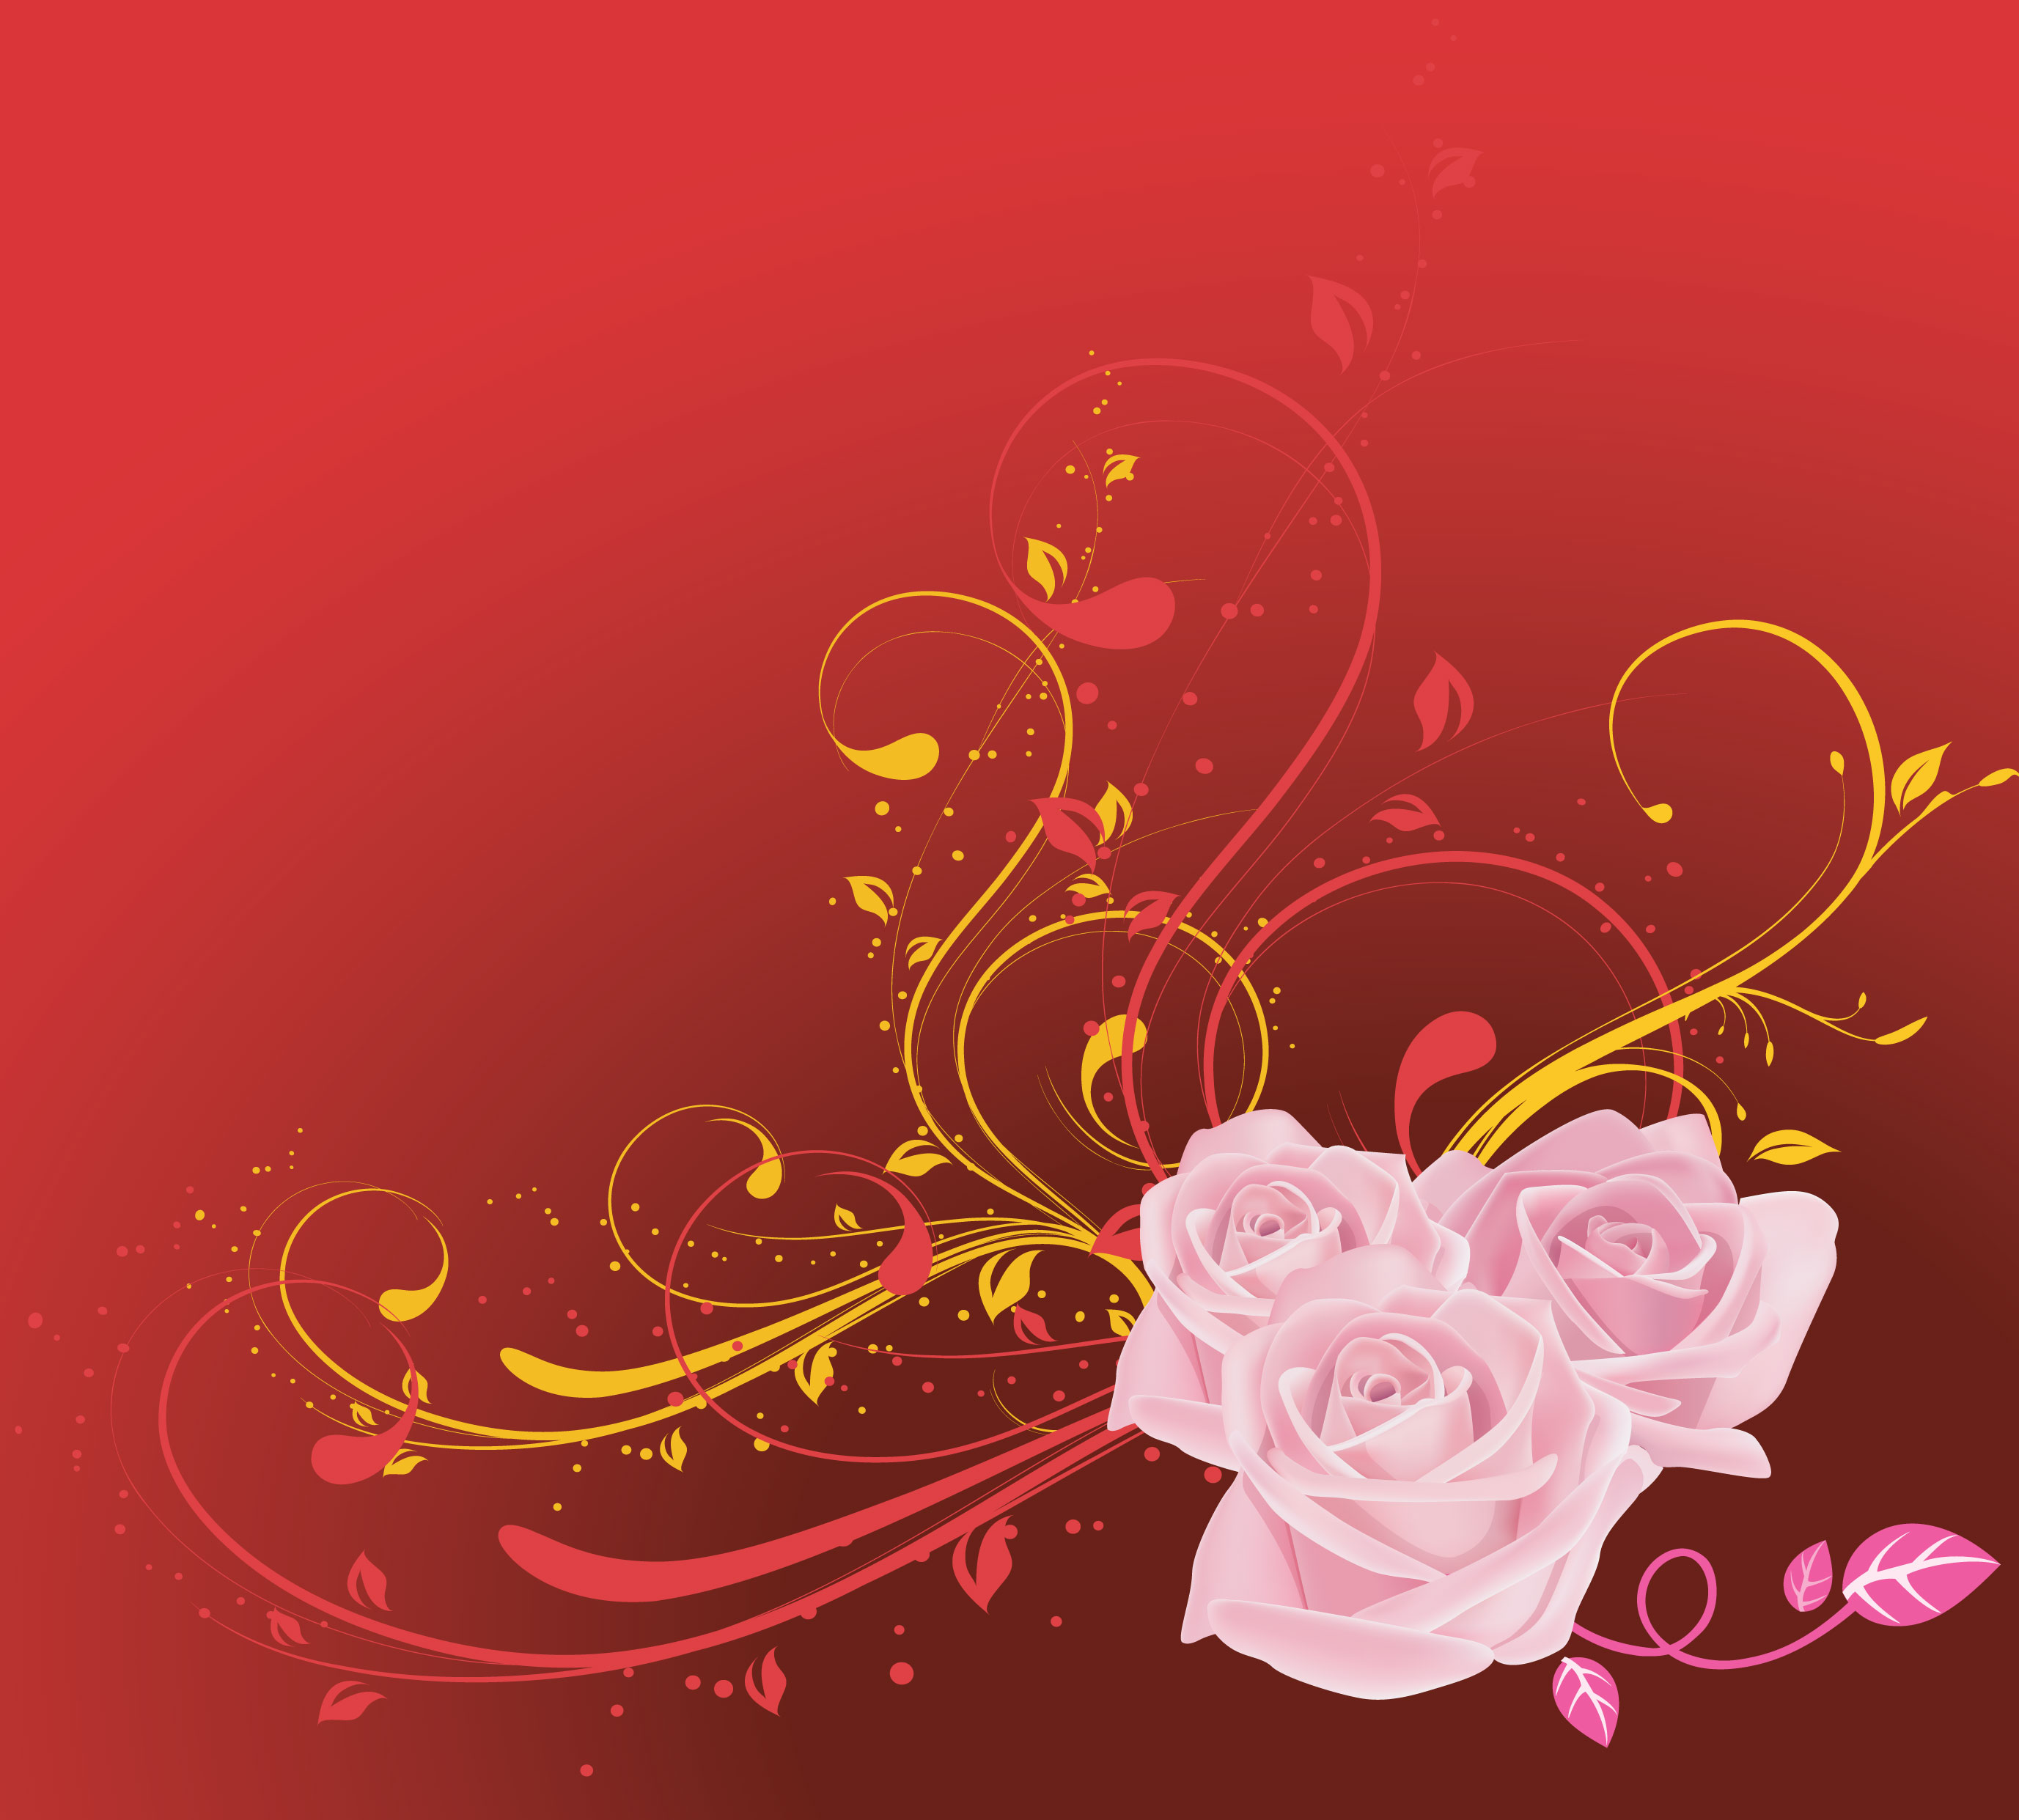 ピンクの花のイラスト フリー素材 壁紙 背景no 694 ピンクのバラ 赤背景